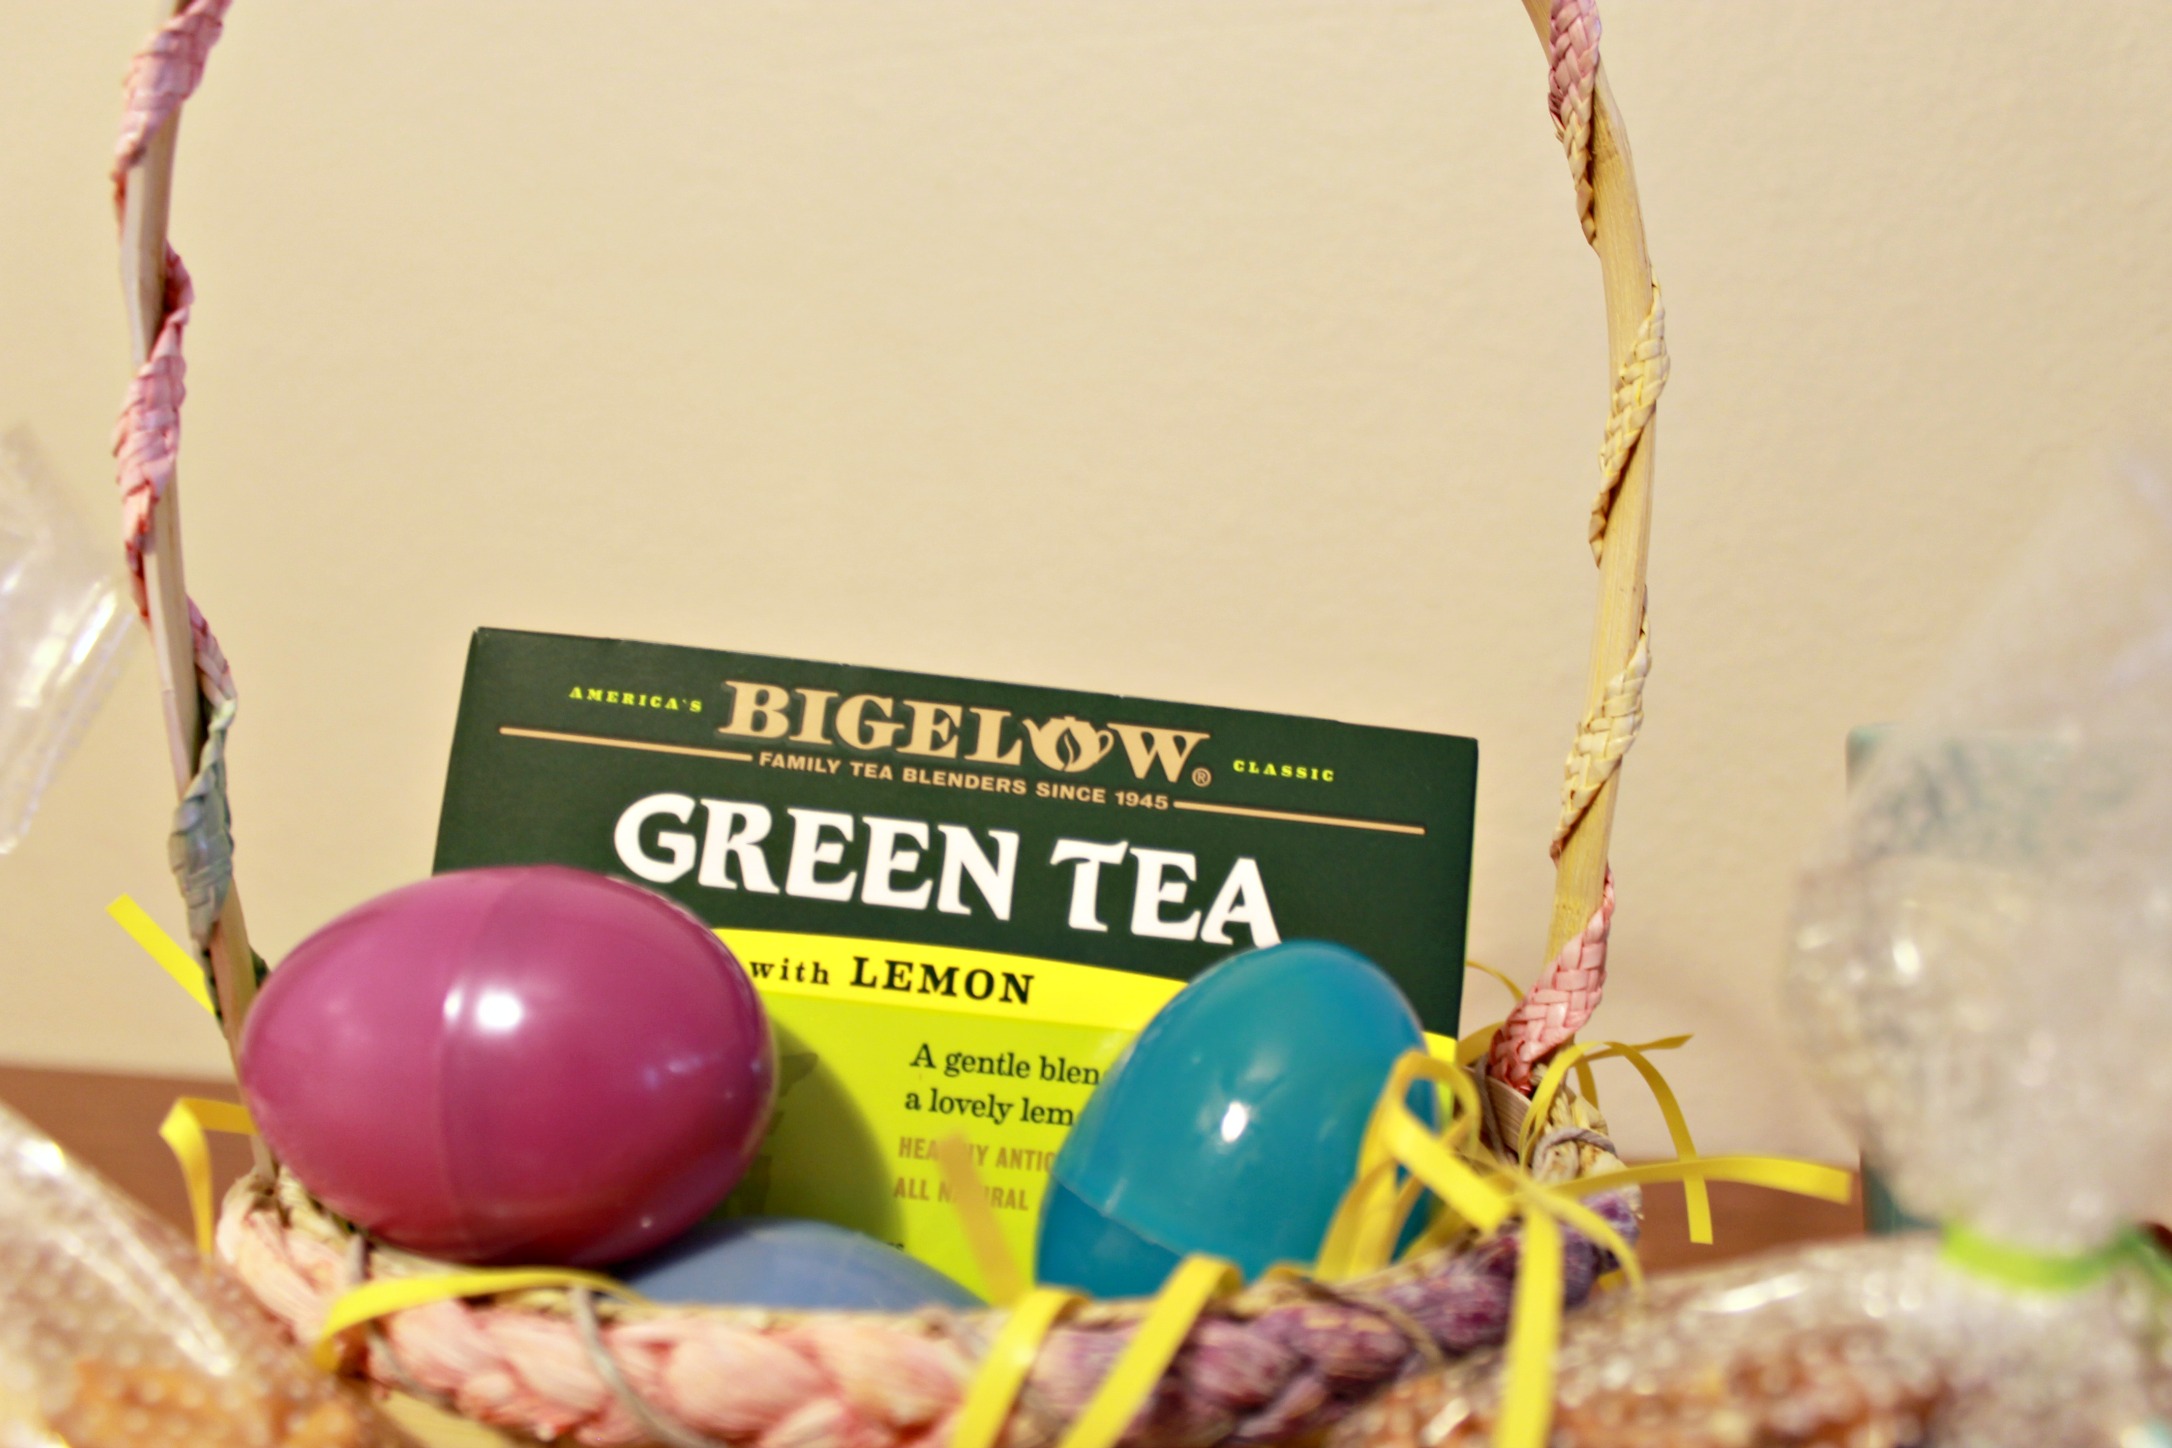 Bigelow Tea for Easter Celebrations #shop #Bigelow #TrendTea #CollectiveBias